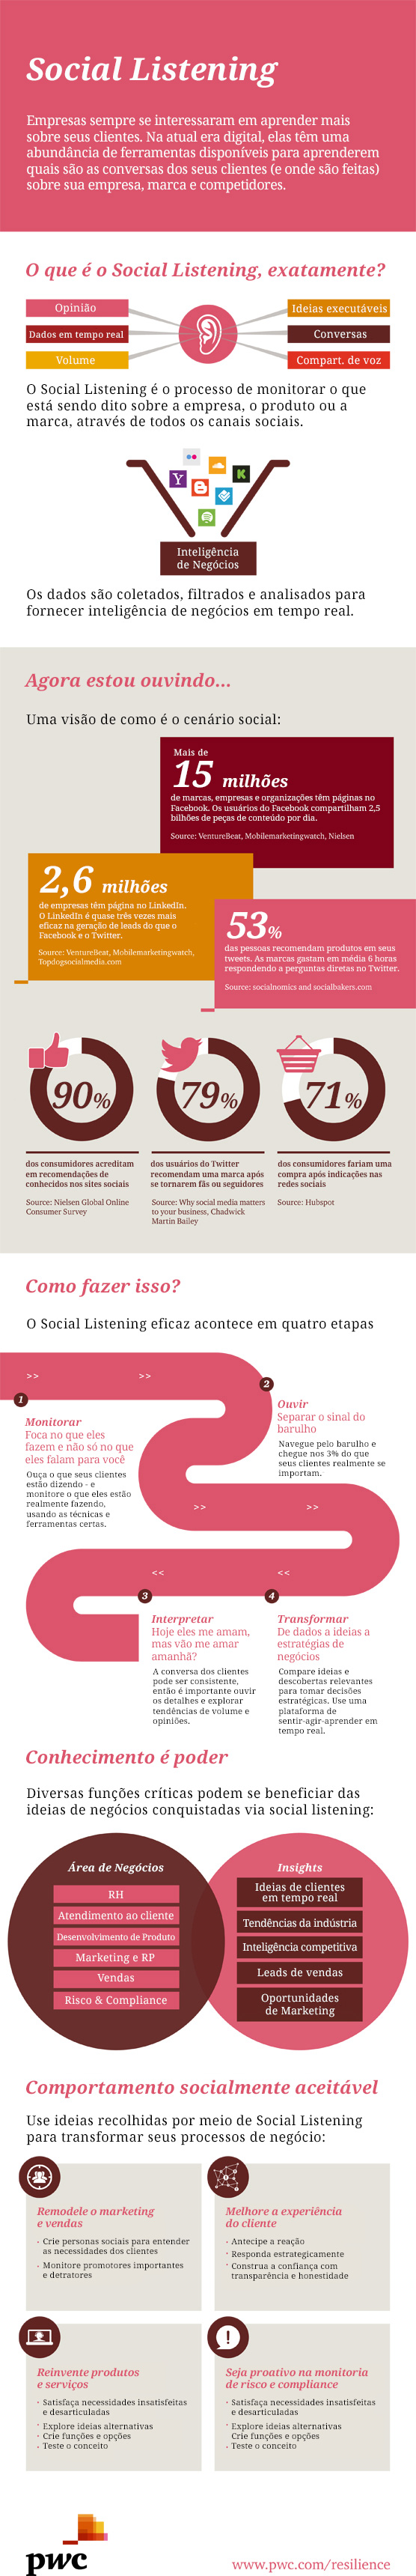 Infográfico: o que é e como fazer Social Listening?